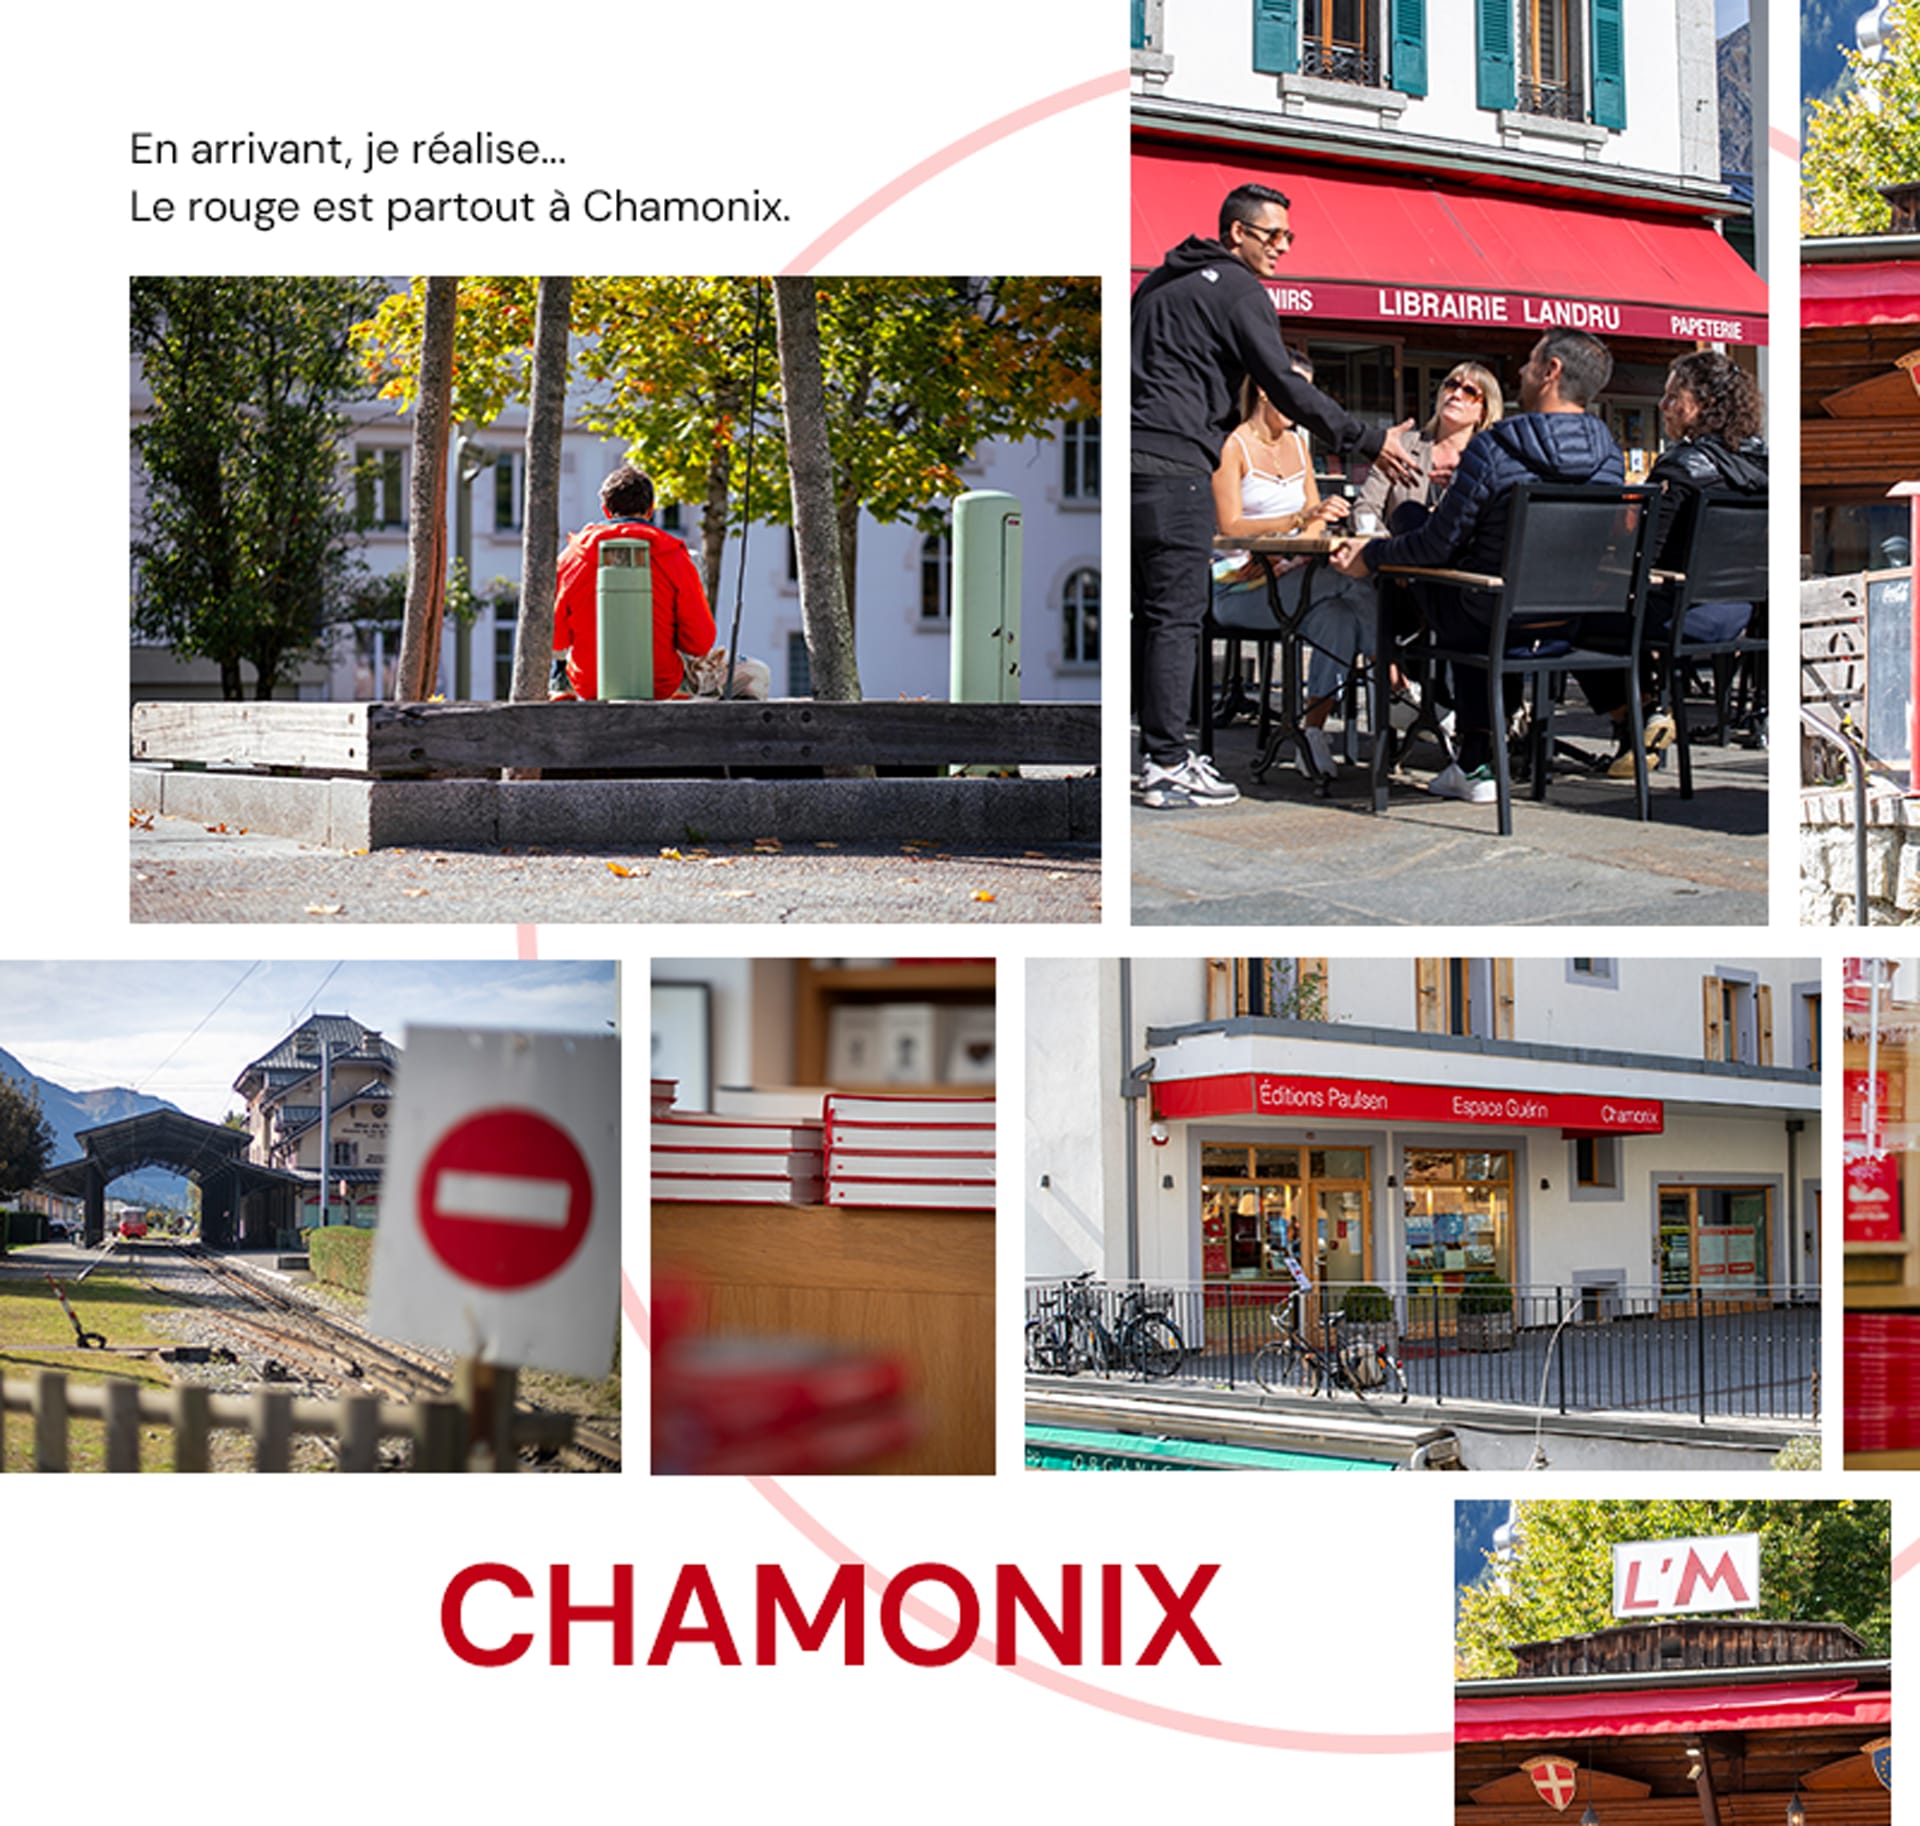 Enseignes et signalétiques rouge dans le centre ville de Chamonix